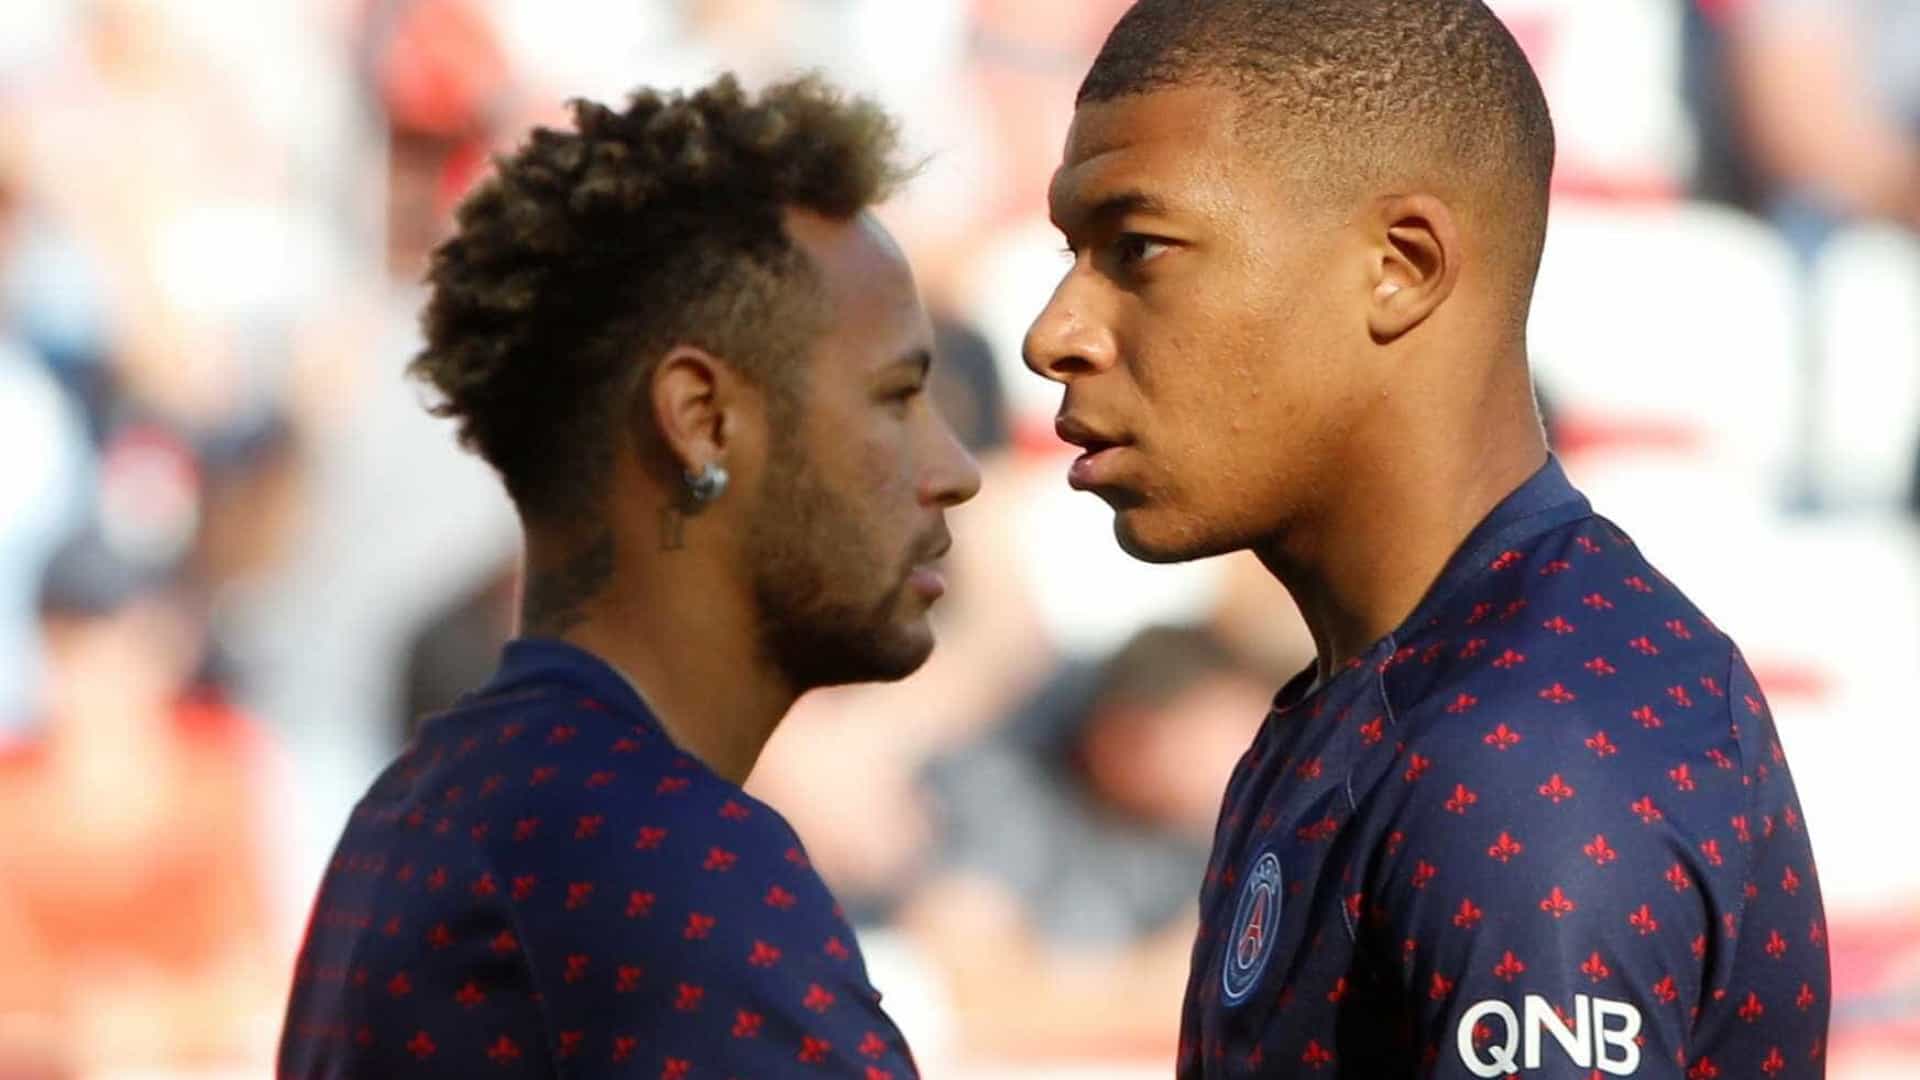 naom 5bf58c0a10683 1 - Técnico do PSG admite chance de saída de Neymar e Mbappé